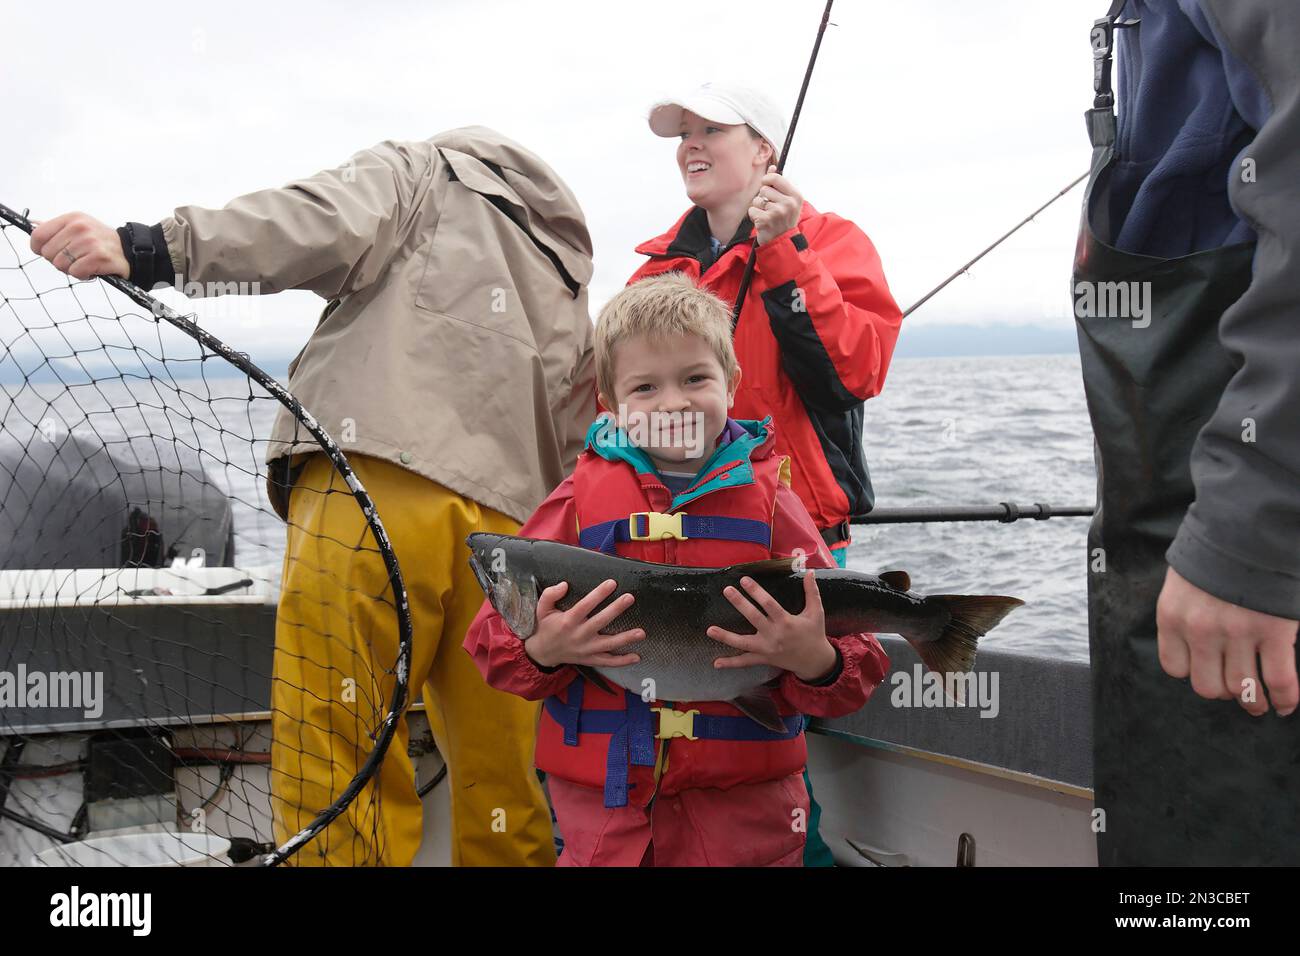 Ein Junge zeigt stolz den Lachs, den er gefangen hat, als er mit seiner Familie in der Nähe von Prince of Wales Island, Alaska, Vereinigte Staaten von Amerika, fischte Stockfoto